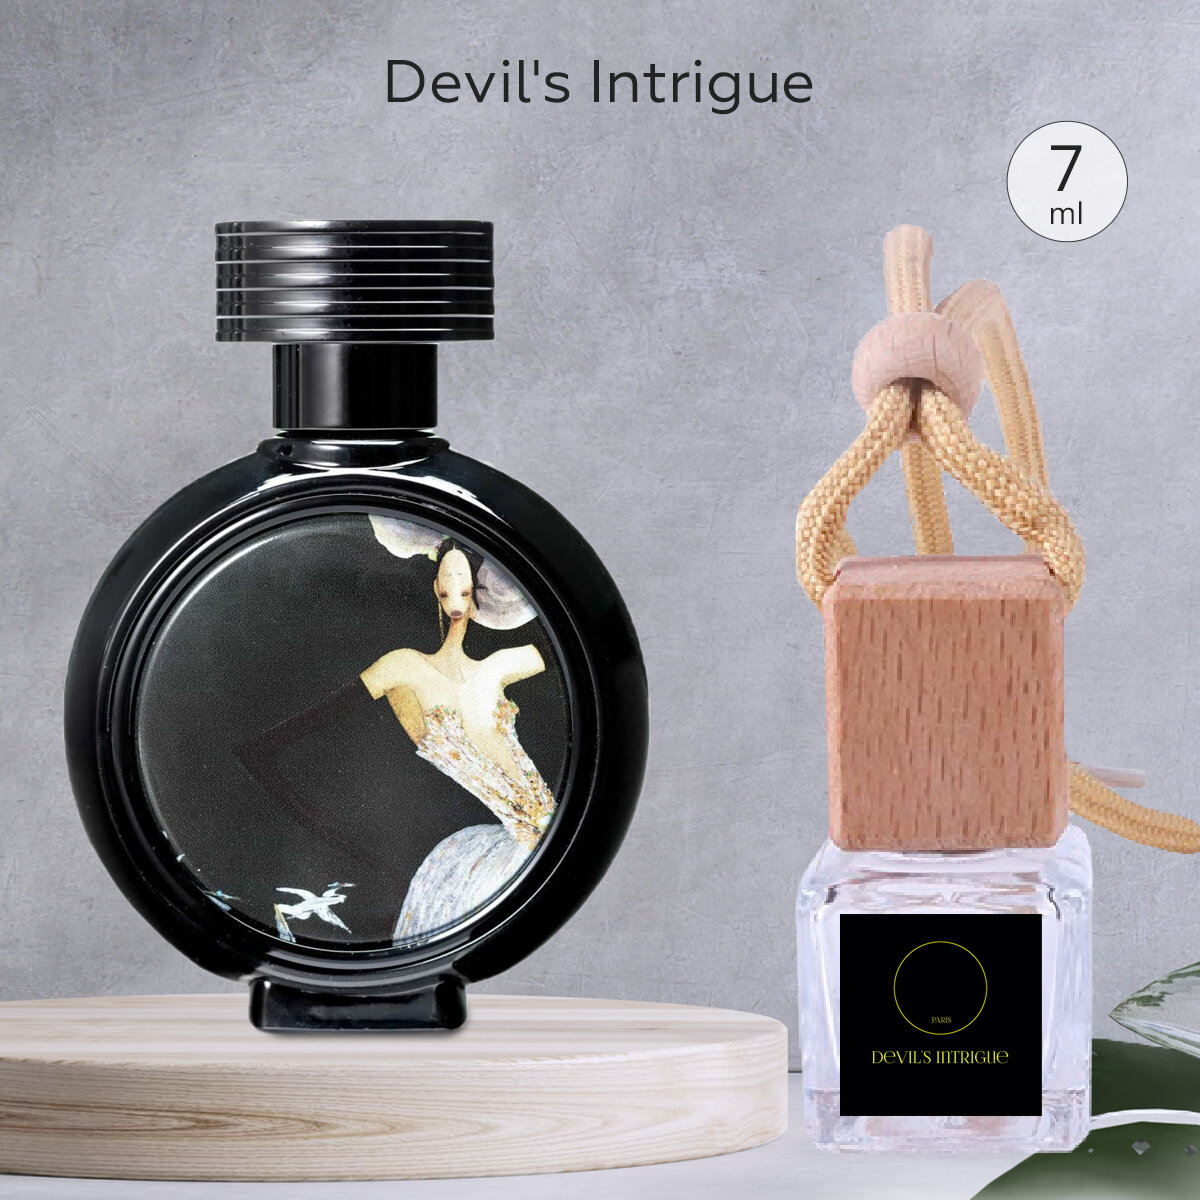 Gratus Parfum Devil's Intrigue Автопарфюм 7 мл / Ароматизатор для автомобиля и дома